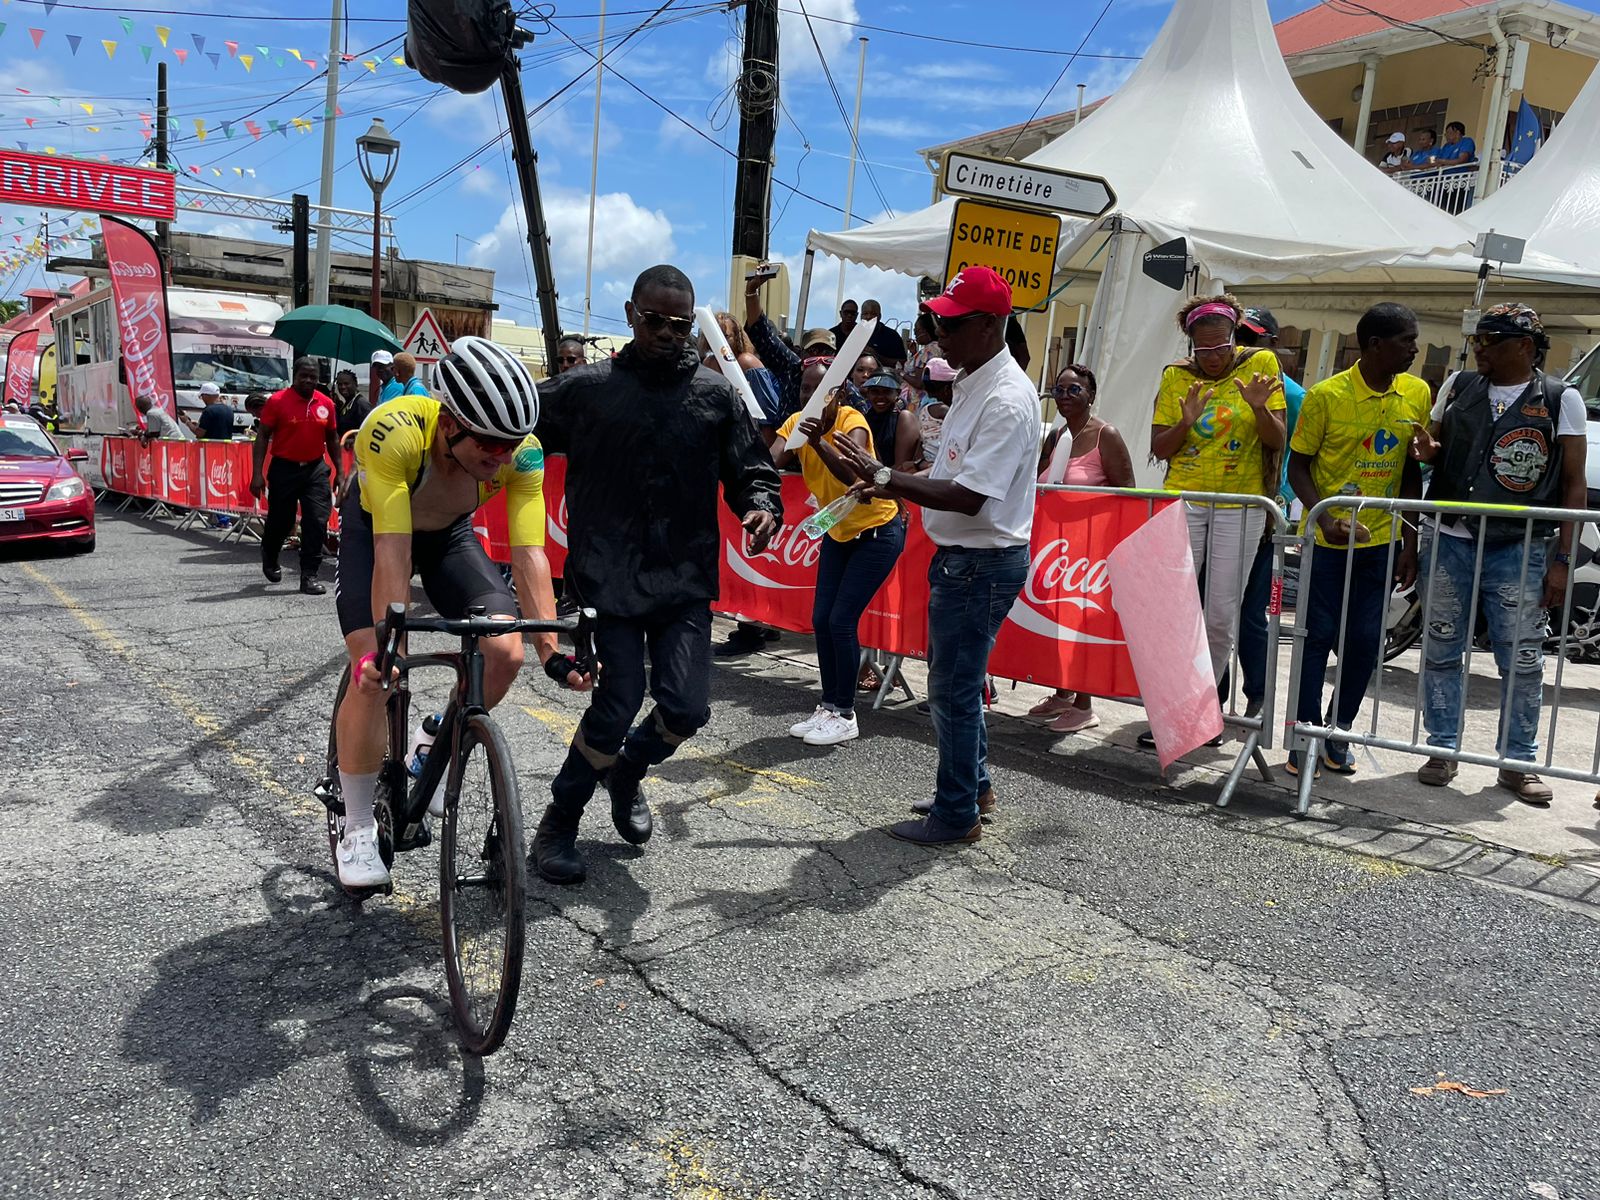     9e étape du Tour Cycliste International de Guadeloupe : relâchement avant le sprint final ?

